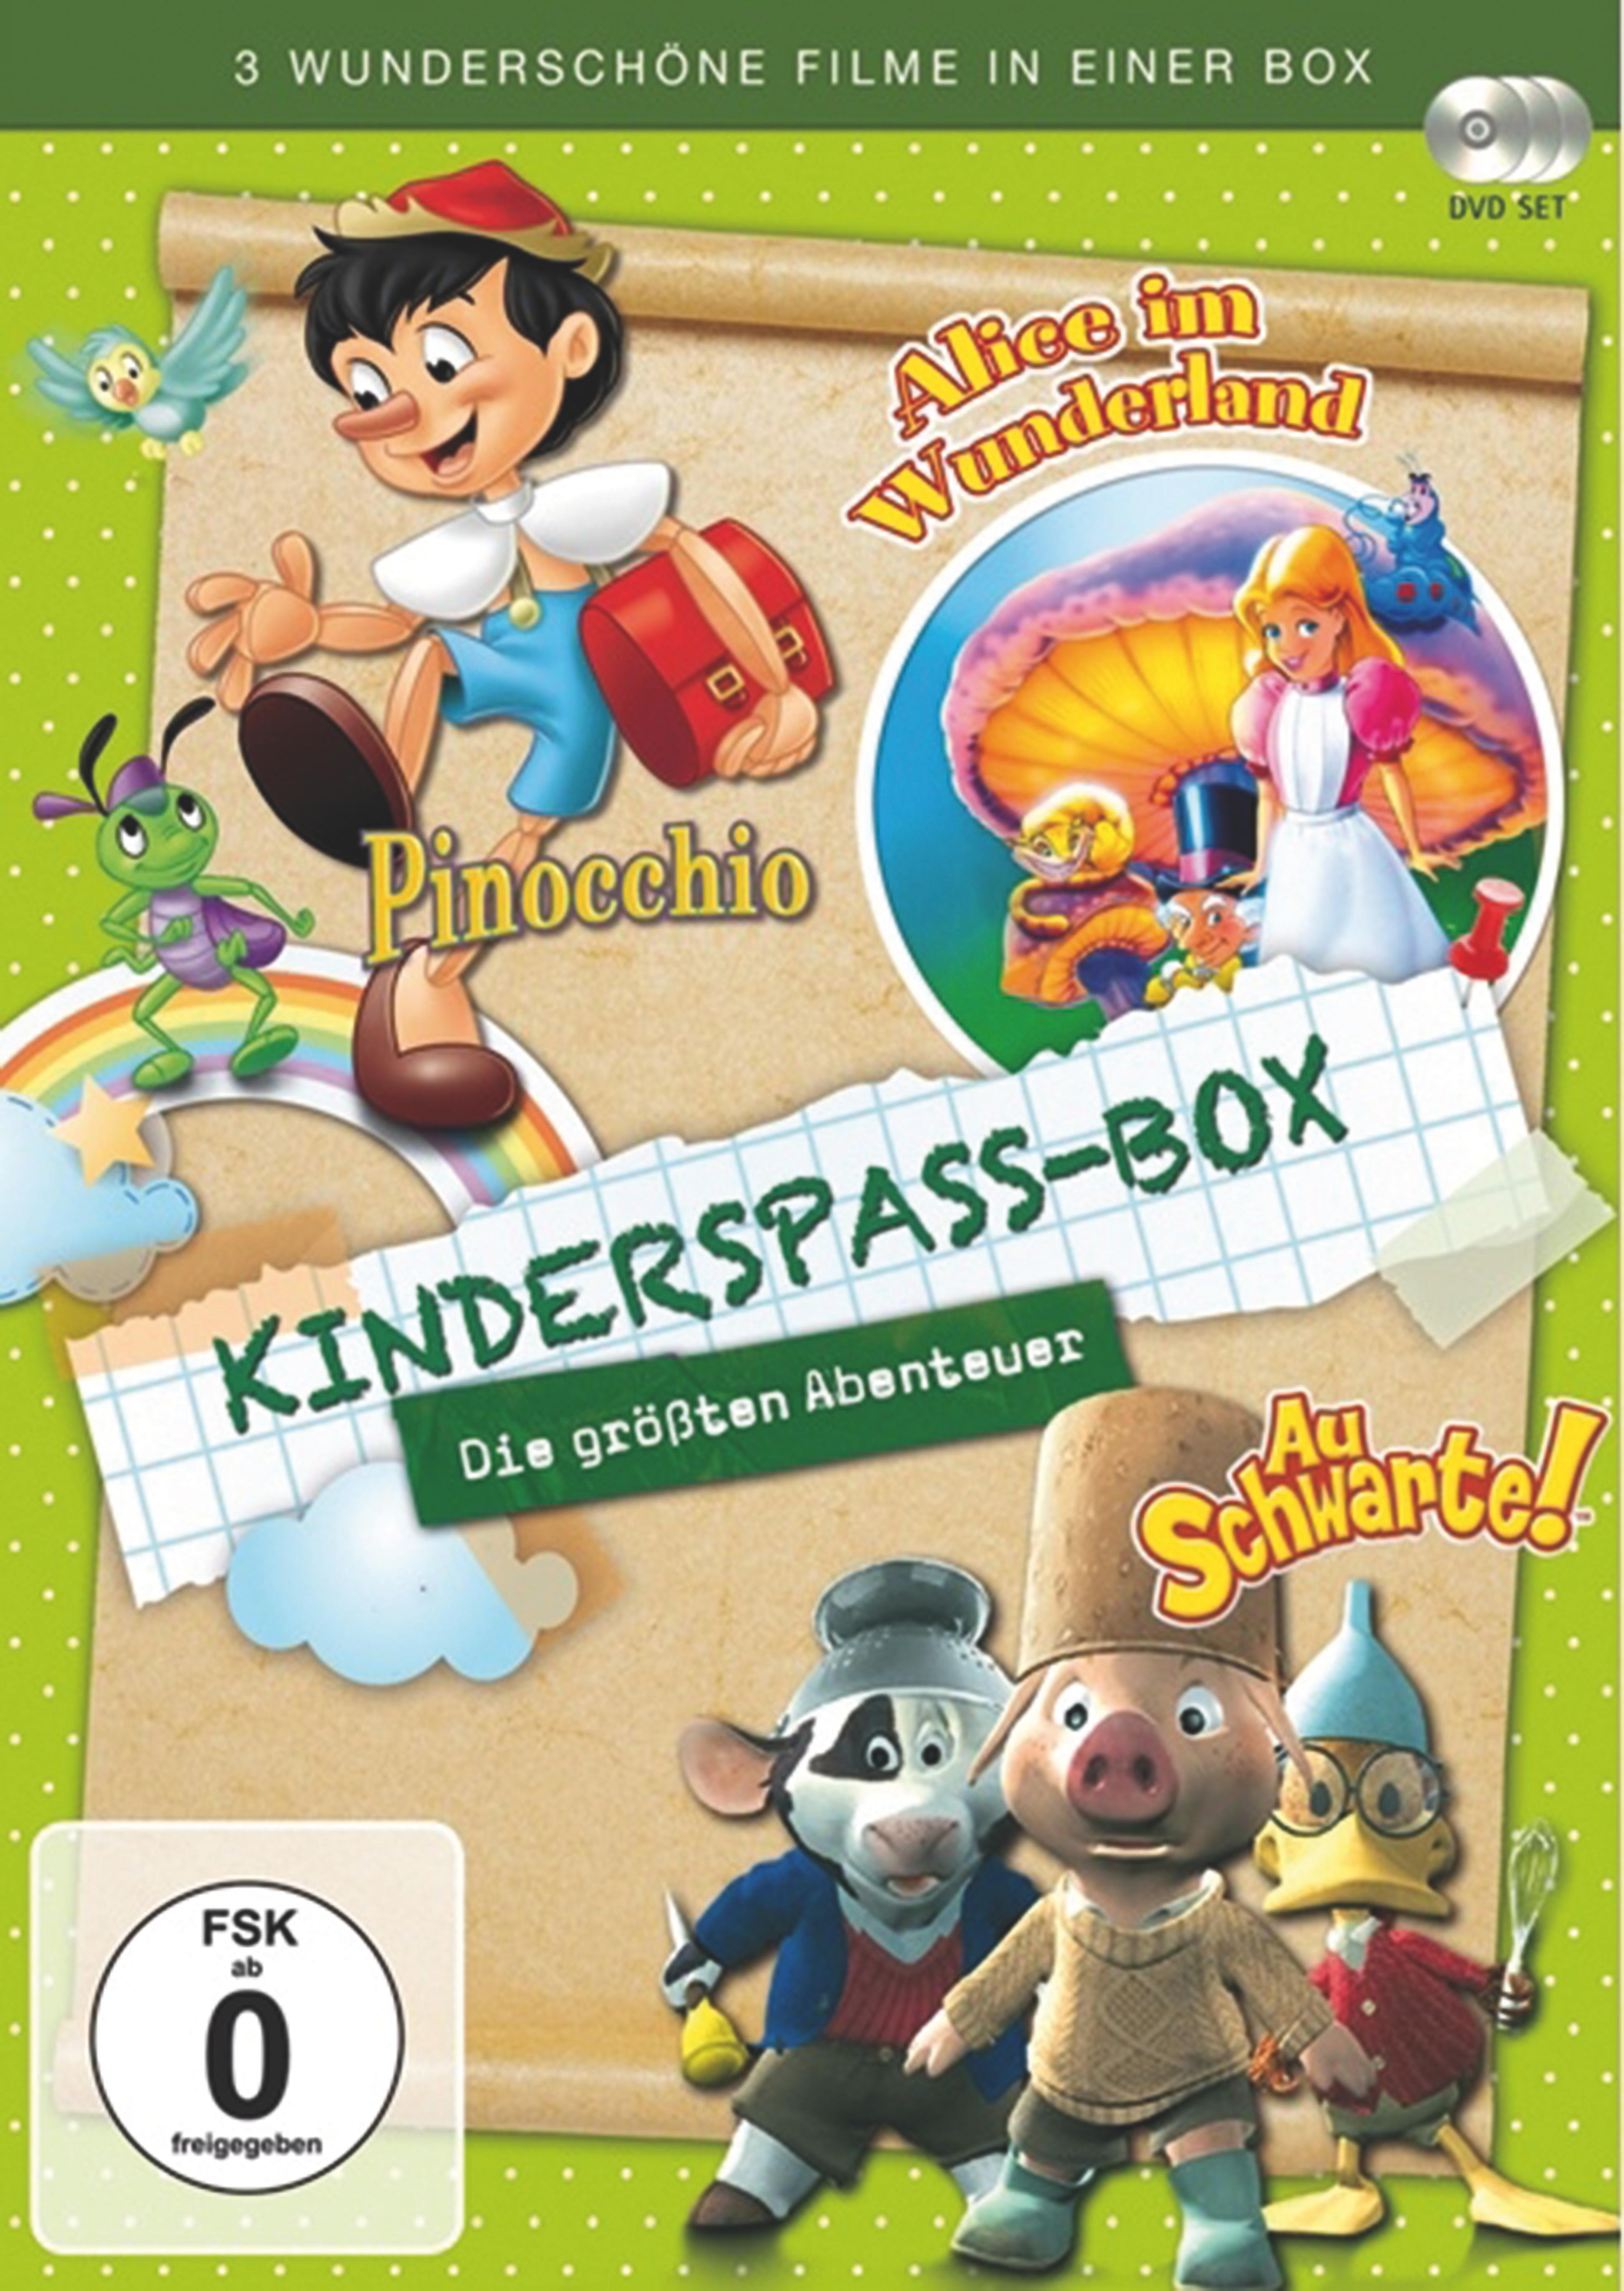 Kinderspass Box - Abenteuer Die DVD größten